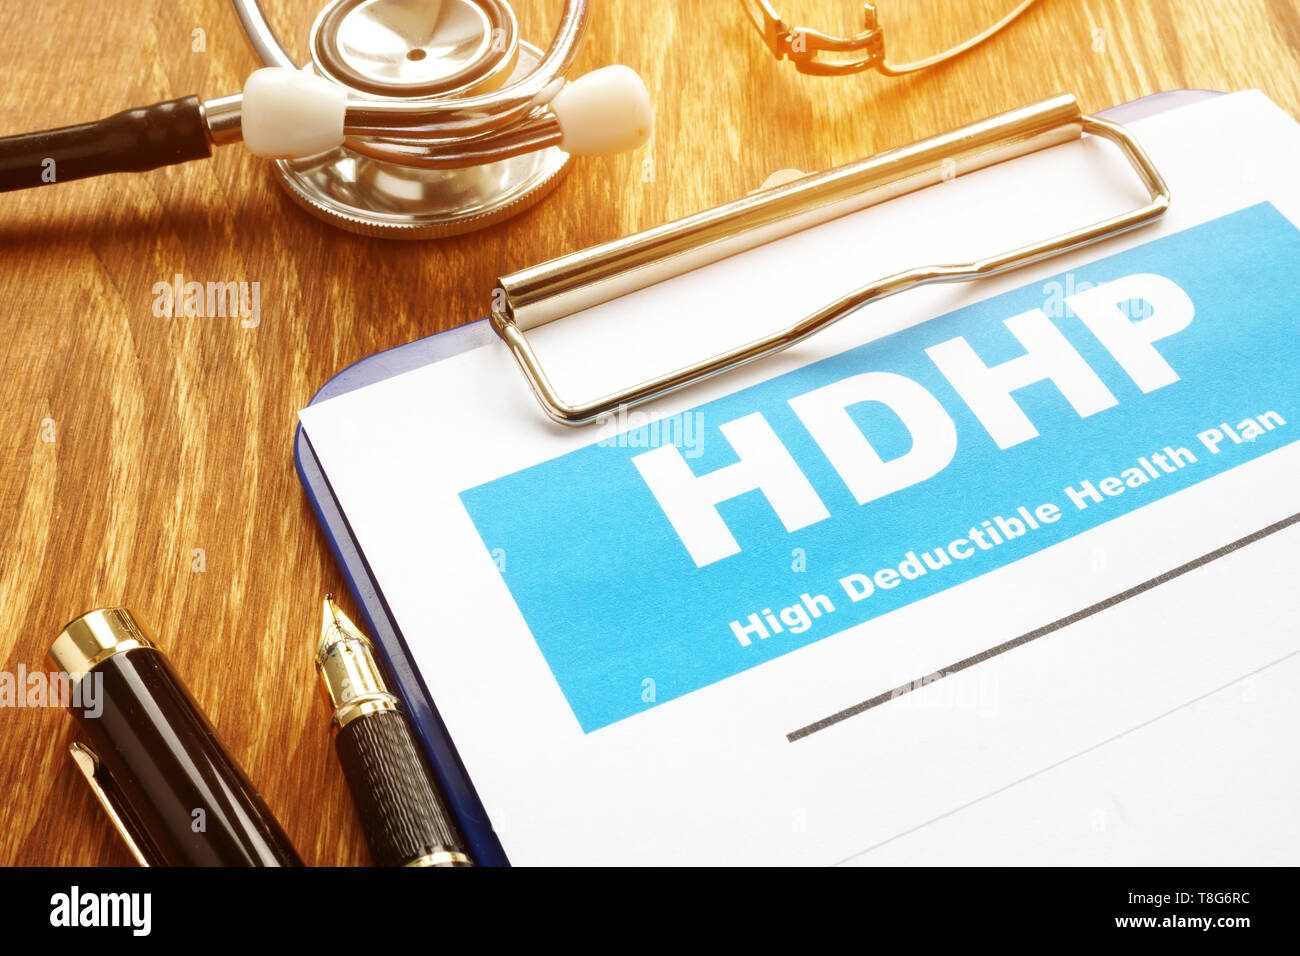 Plan de salud de deducibles altos HDHP con el portapapeles. Foto de stock